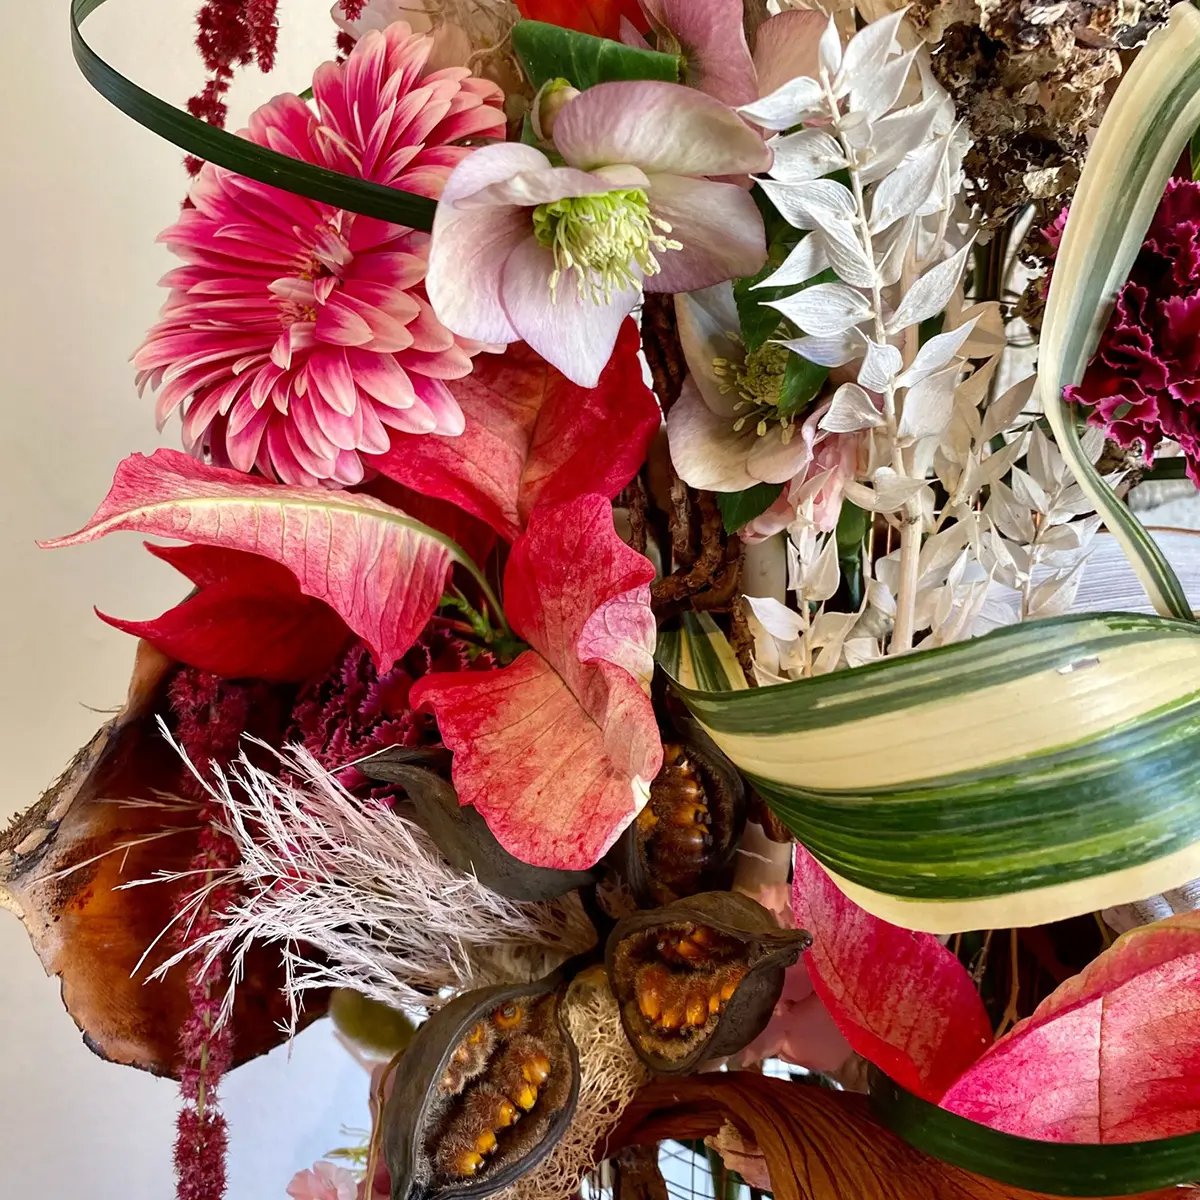 Kats Floral Design florist on Thursd feature